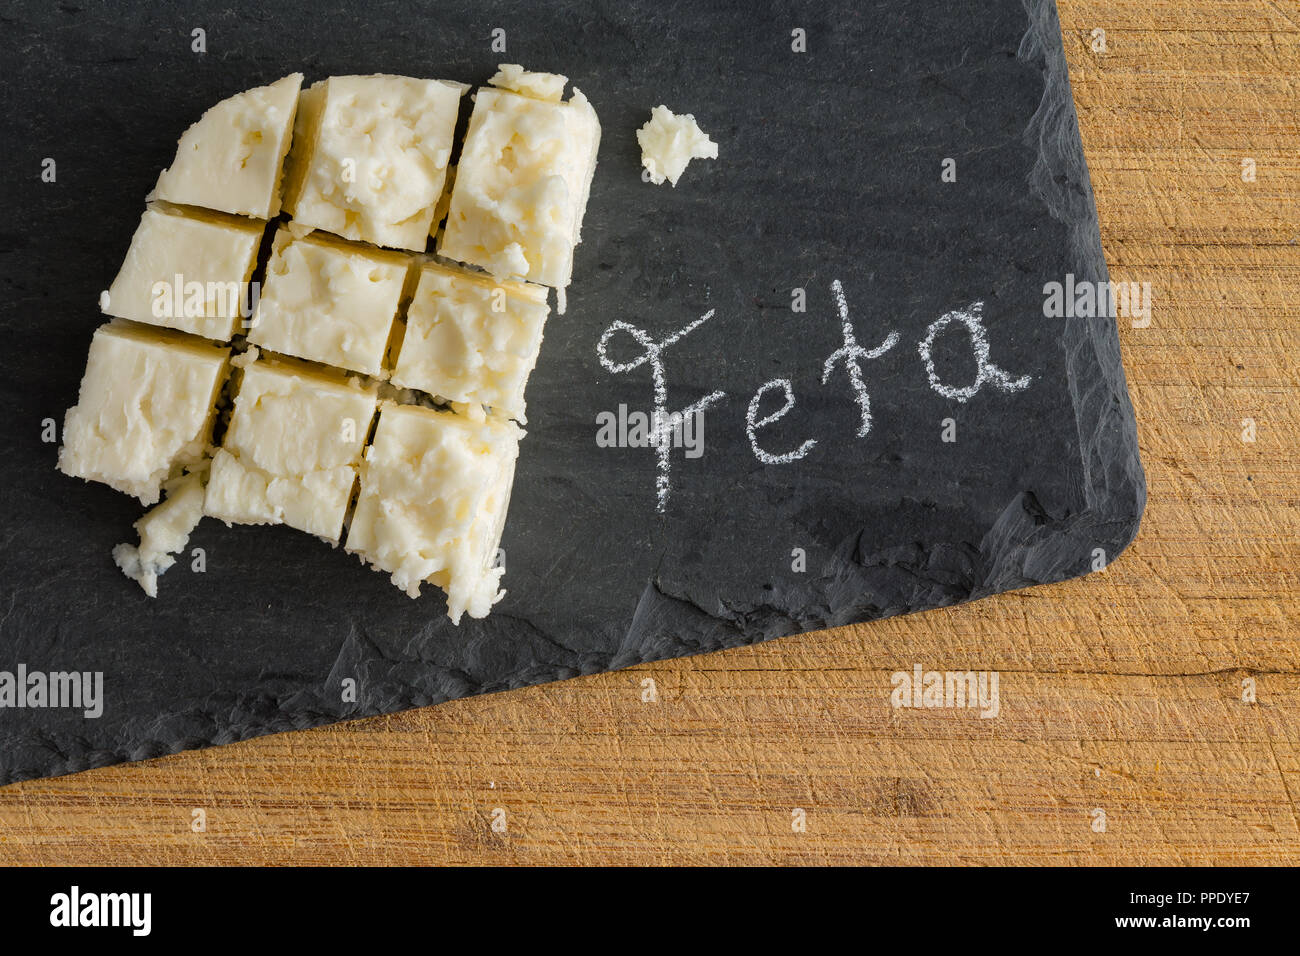 Gewürfelte Platte des traditionellen semi-soft krümelig griechischer Schafskäse auf einer Schiefertafel mit handschriftlichen Text - Feta - Neben der von oben gesehen Stockfoto